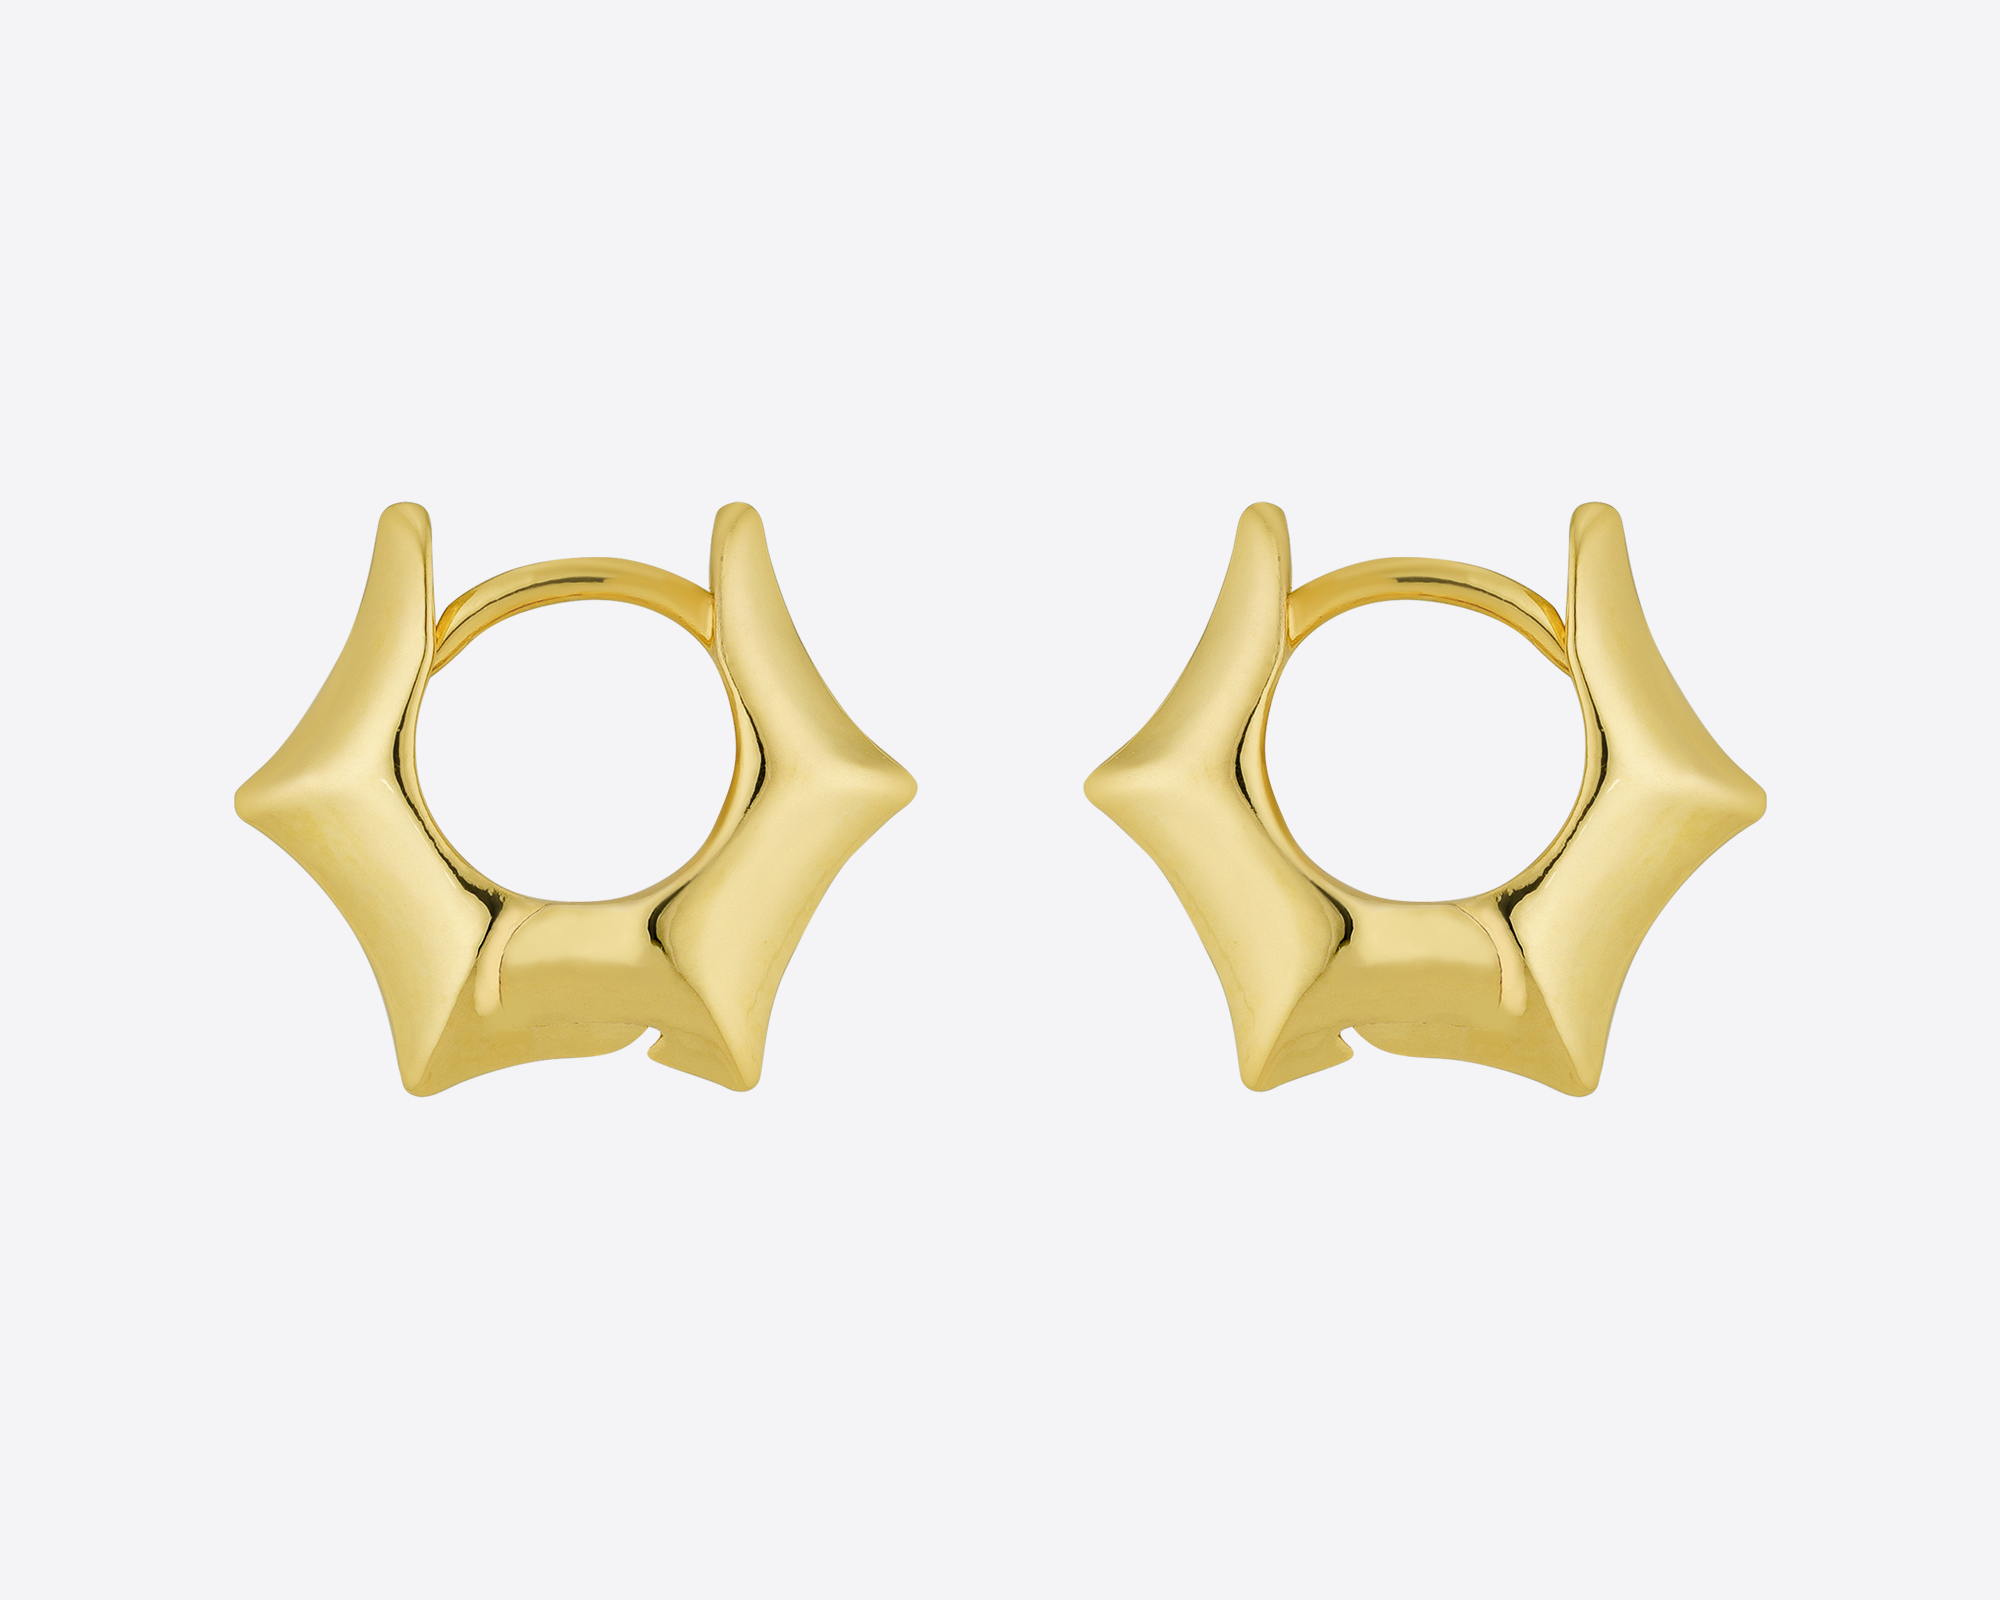 Starfruit Earrings Gold, 69,000KRW